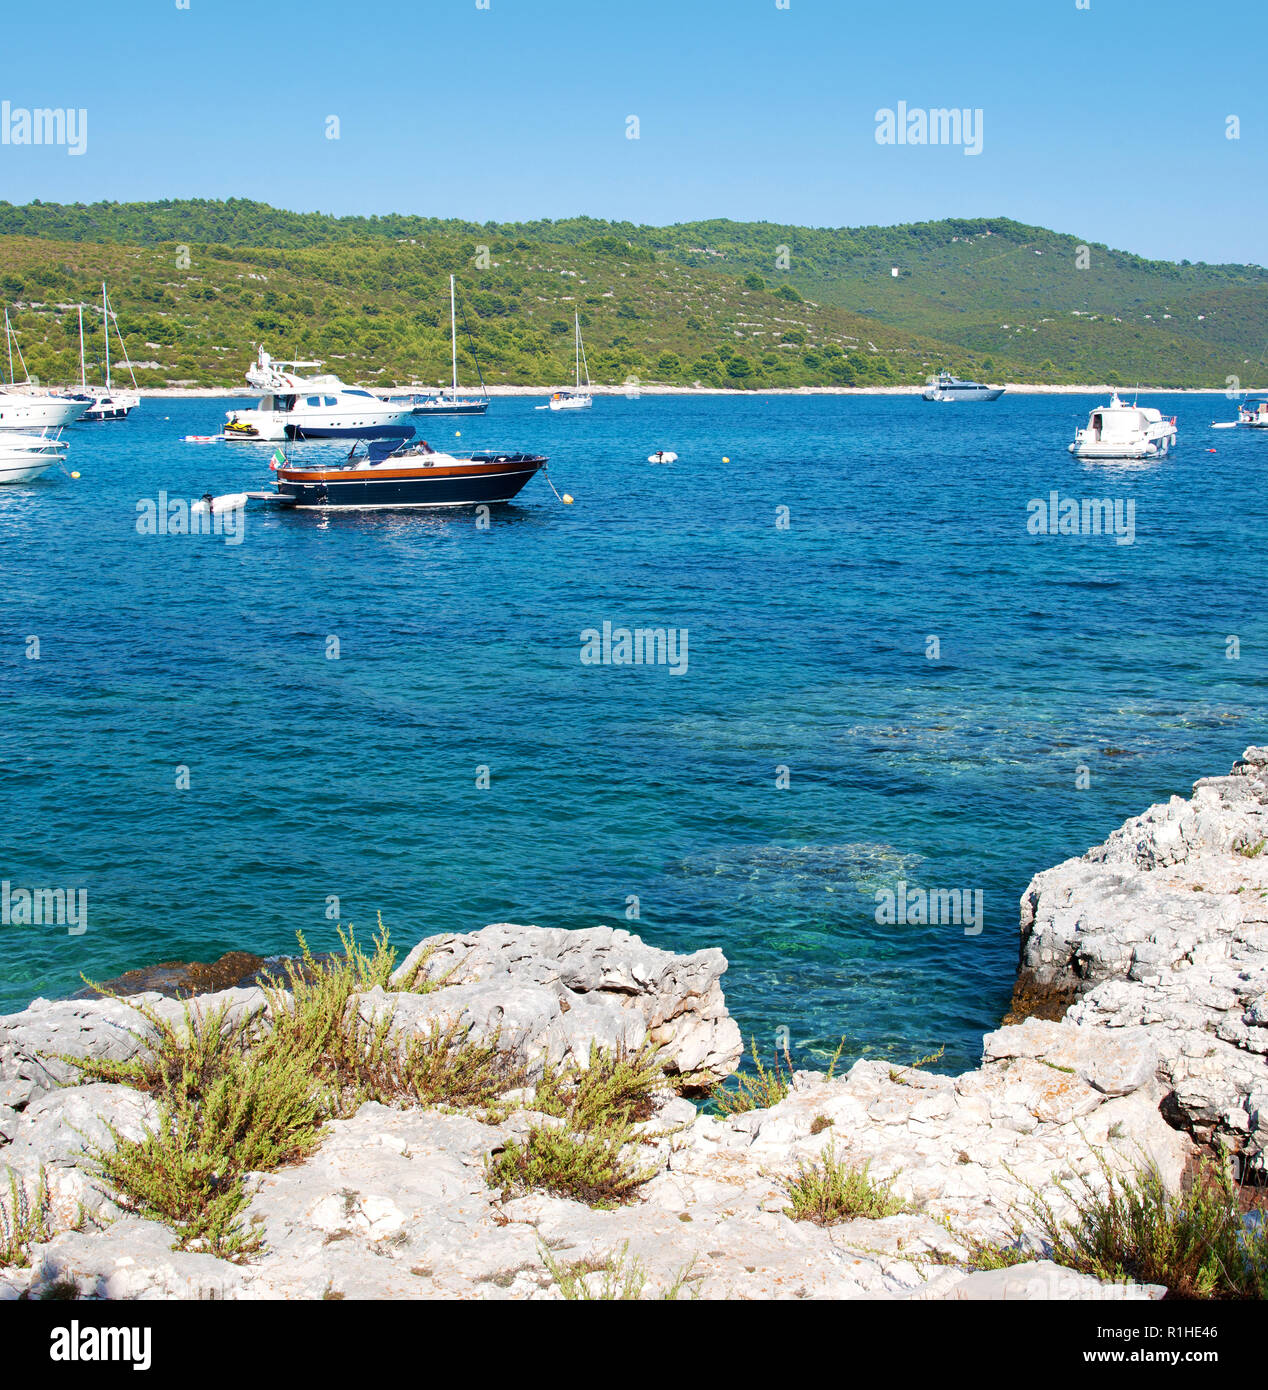 Transparente azurblauen Wasser der Lagune, viele Yachten und ein Boot im Meer und Hügel im grünen Wald in der Nähe der felsigen Strand bedeckt. Insel Dugi otok, Croa Stockfoto